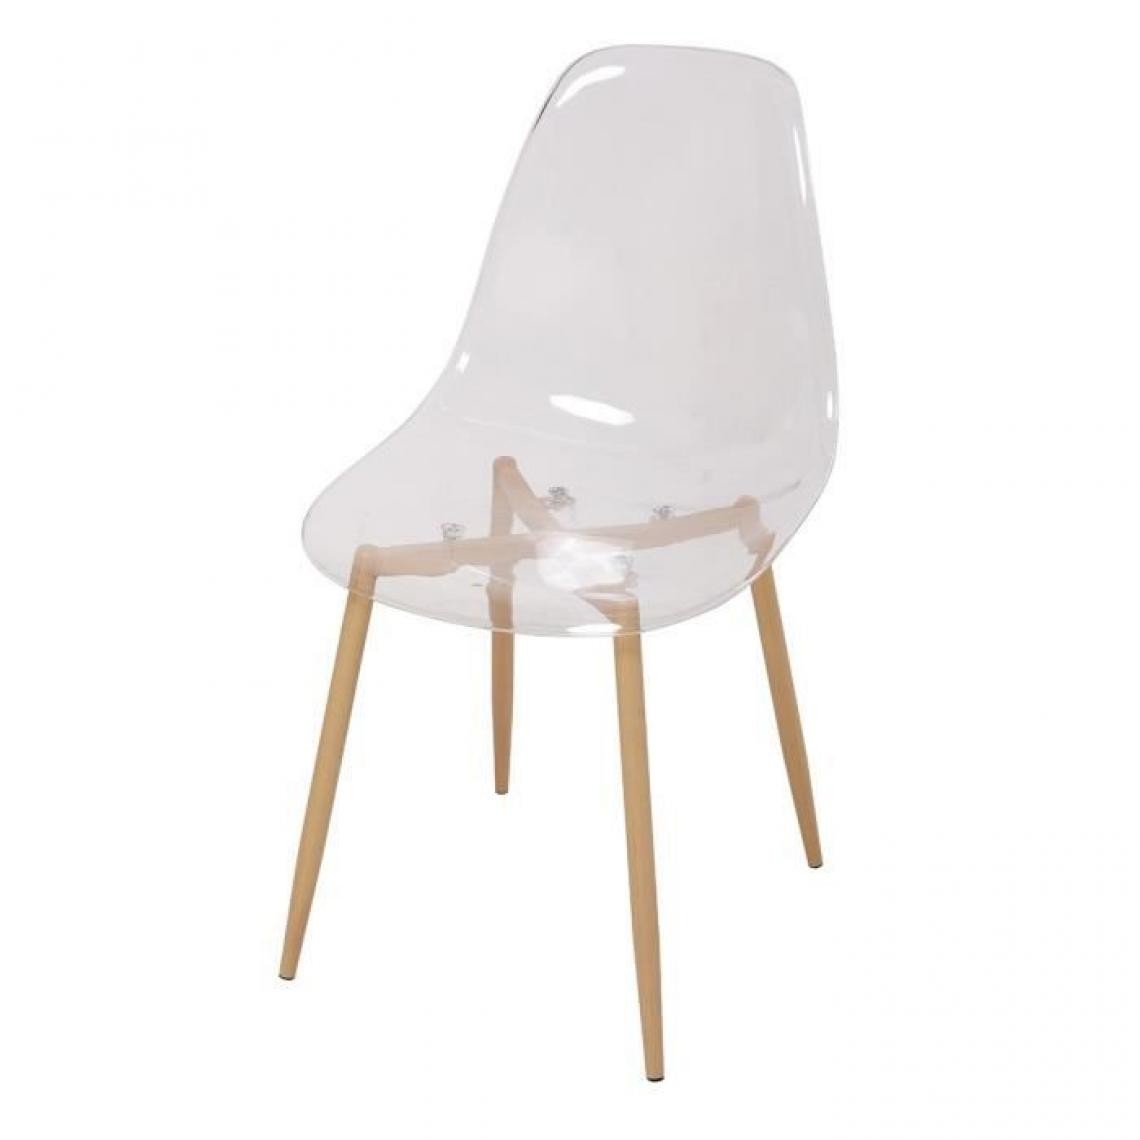 Cstore - Lot de 4 chaises cristal transparent - L 47 x P 54 x H 84 cm - CLODY - Chaises